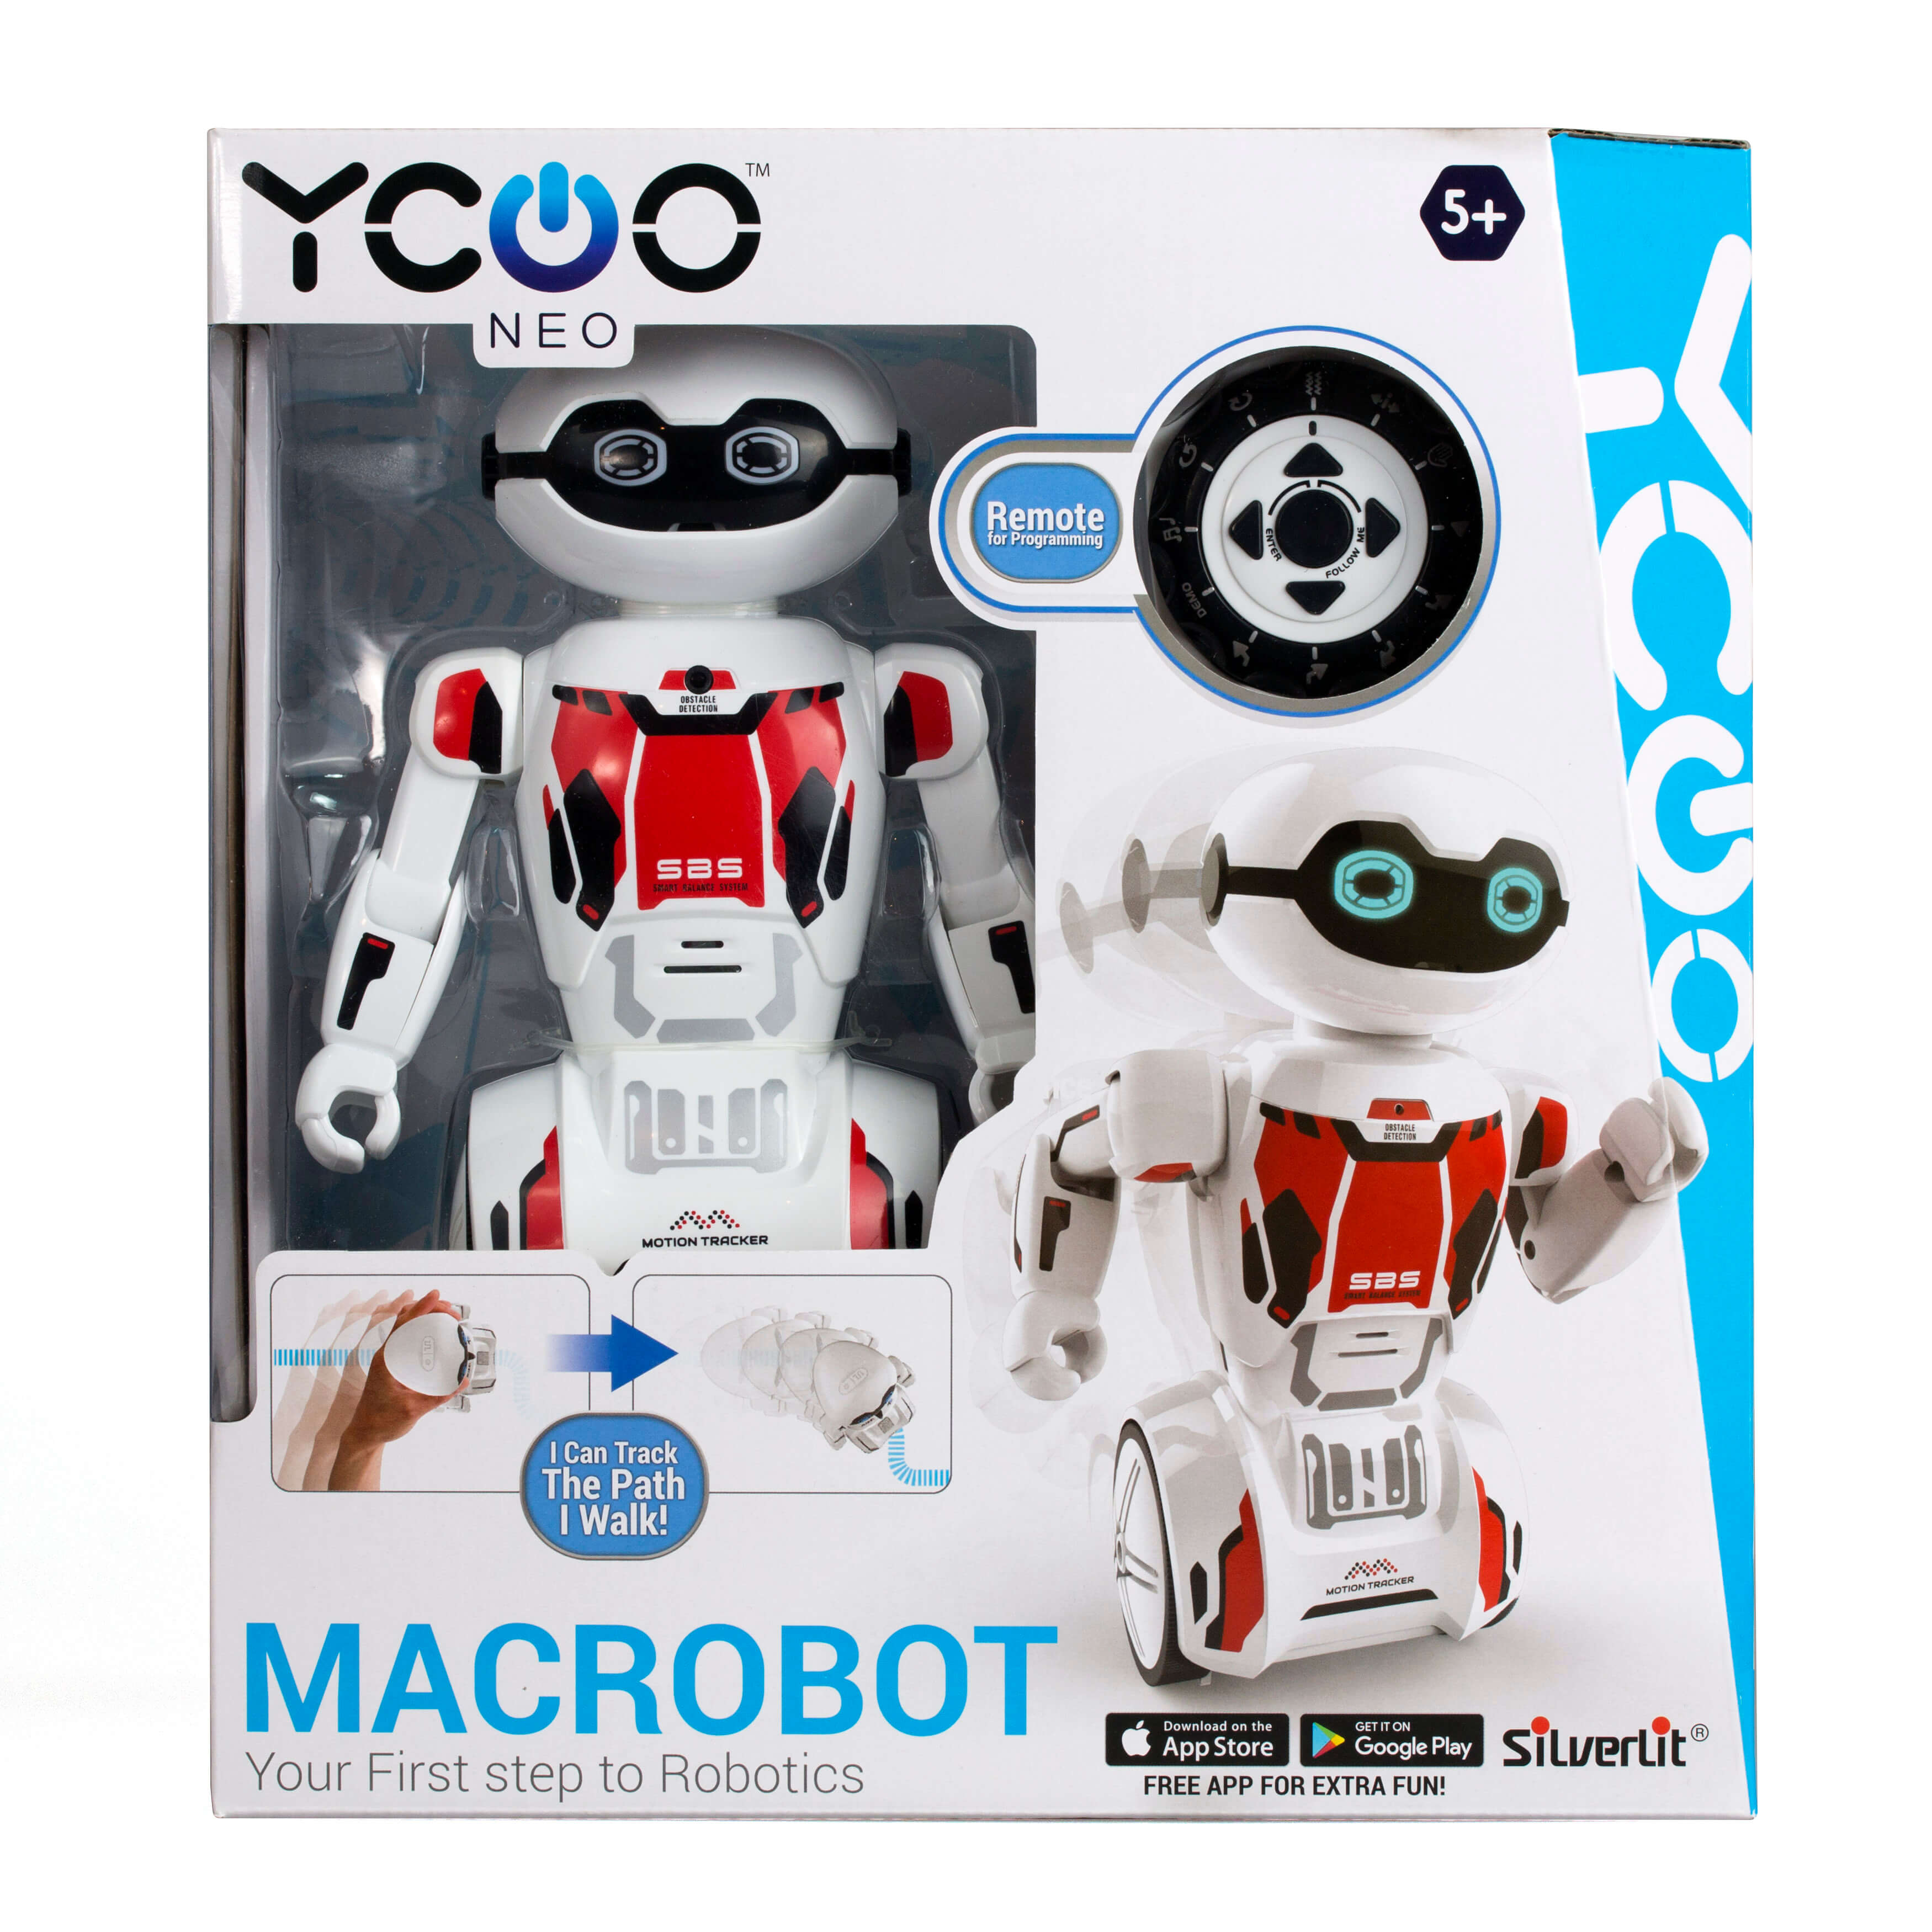 MACROBOT | YCOO